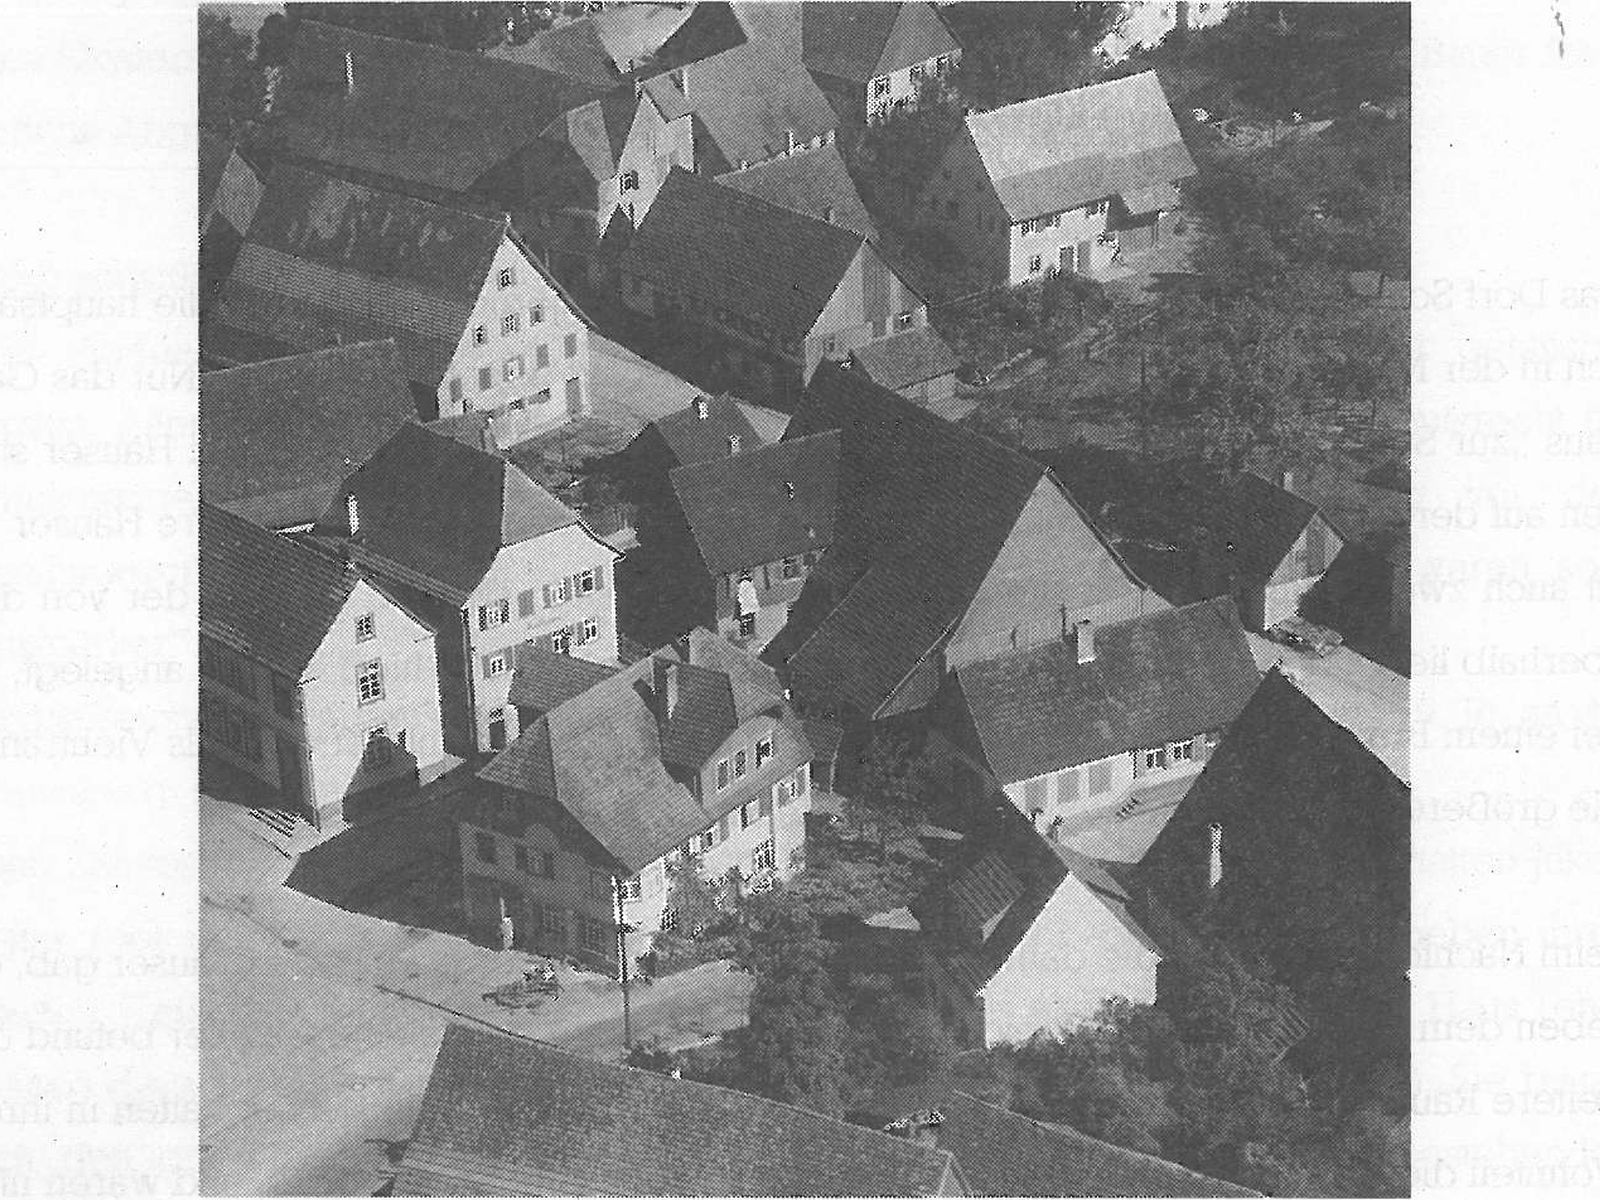  Schopflocher Skizzen Alte Ortsmitte (ca. 1975) - Bild wird mit einem Klick vergrößert 